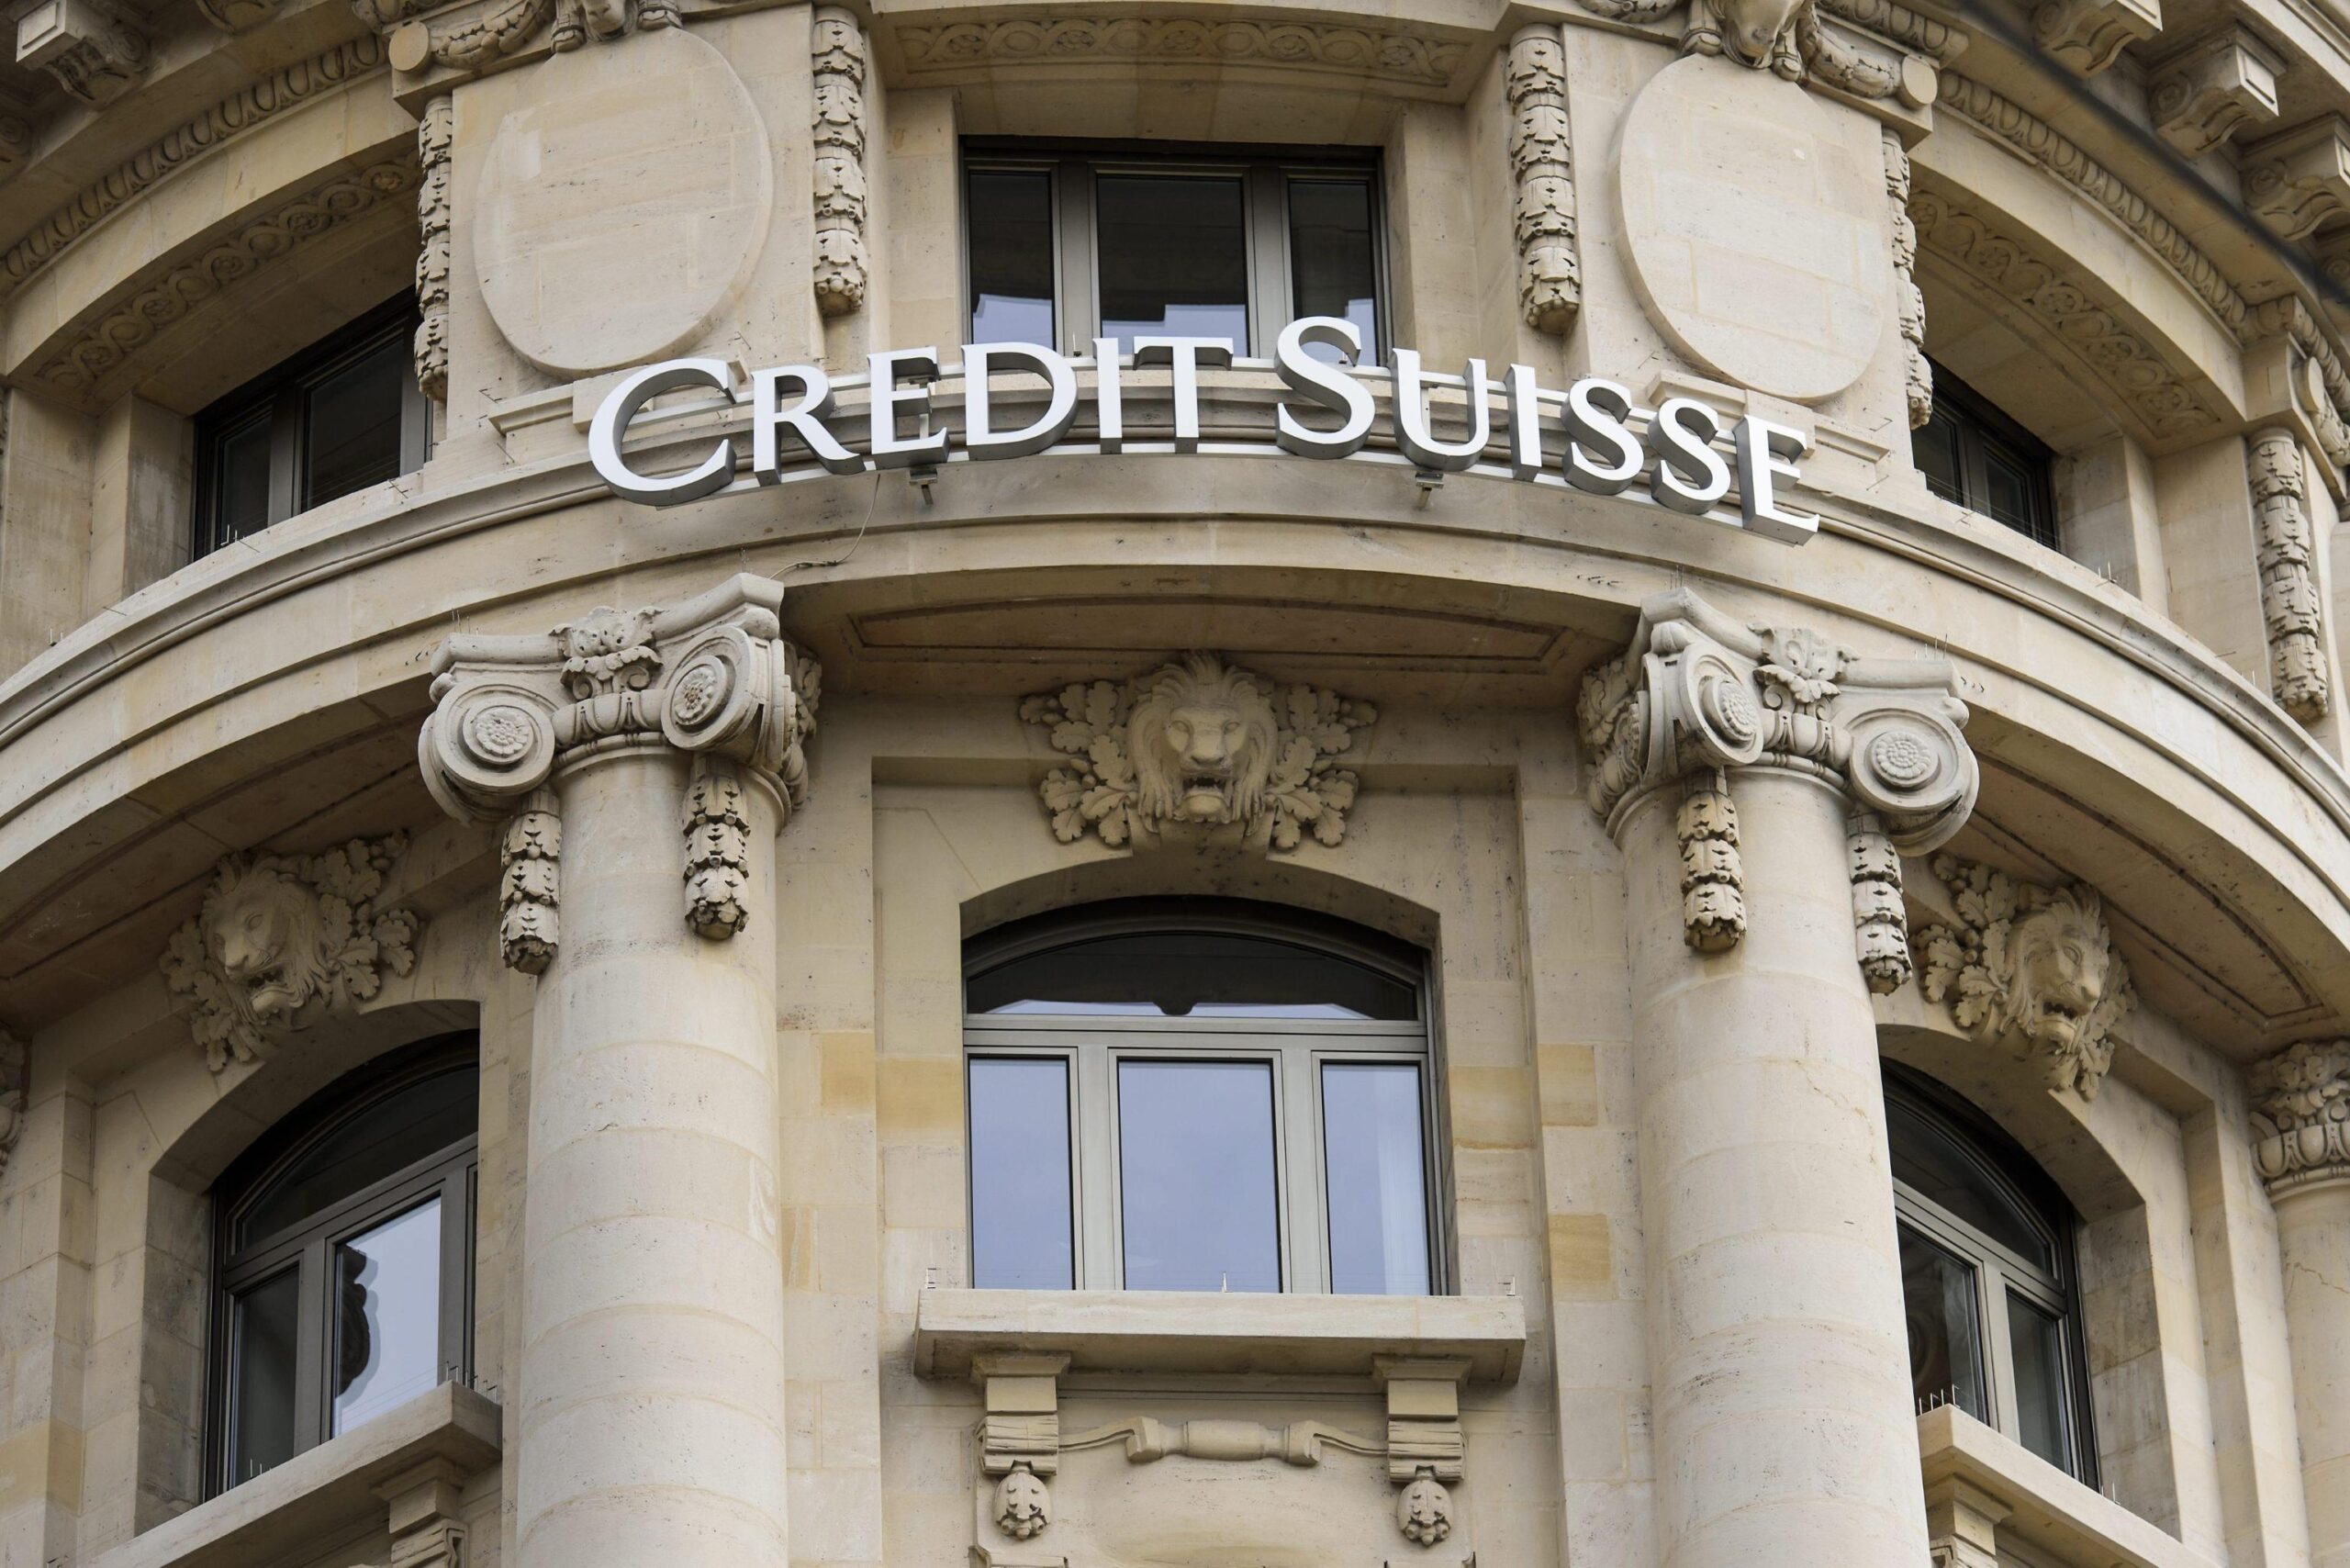 Credit Suisse di nuovo nell’occhio del ciclone: avrebbe gestito 18 mila conti legati ad attività criminali